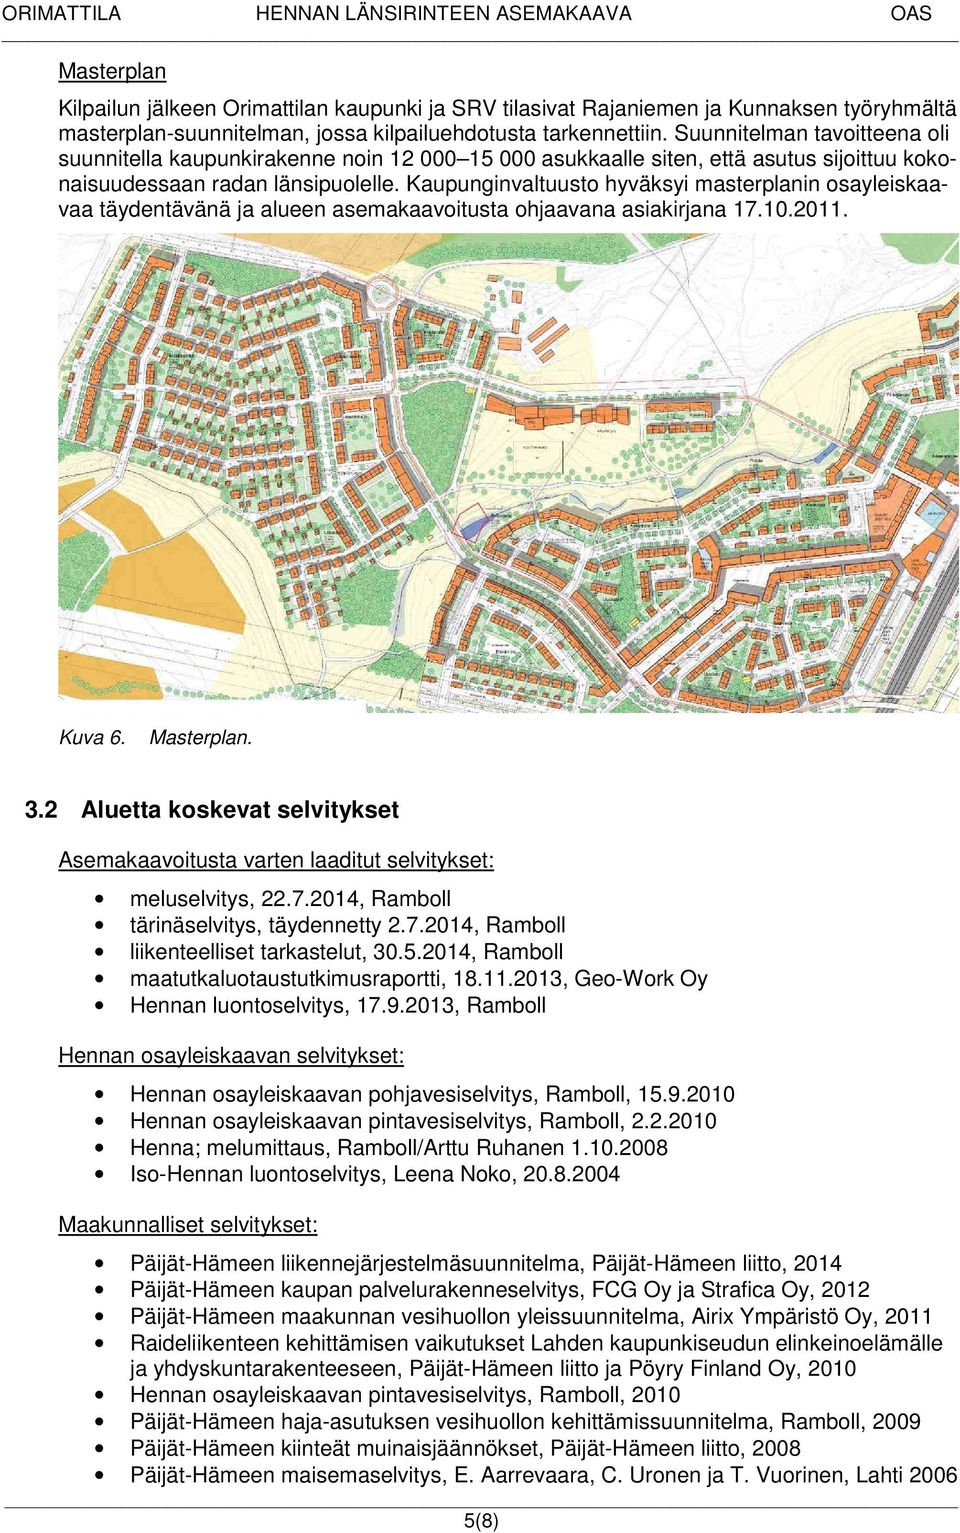 Kaupunginvaltuusto hyväksyi masterplanin osayleiskaavaa täydentävänä ja alueen asemakaavoitusta ohjaavana asiakirjana 17.10.2011. Kuva 6. Masterplan. 3.